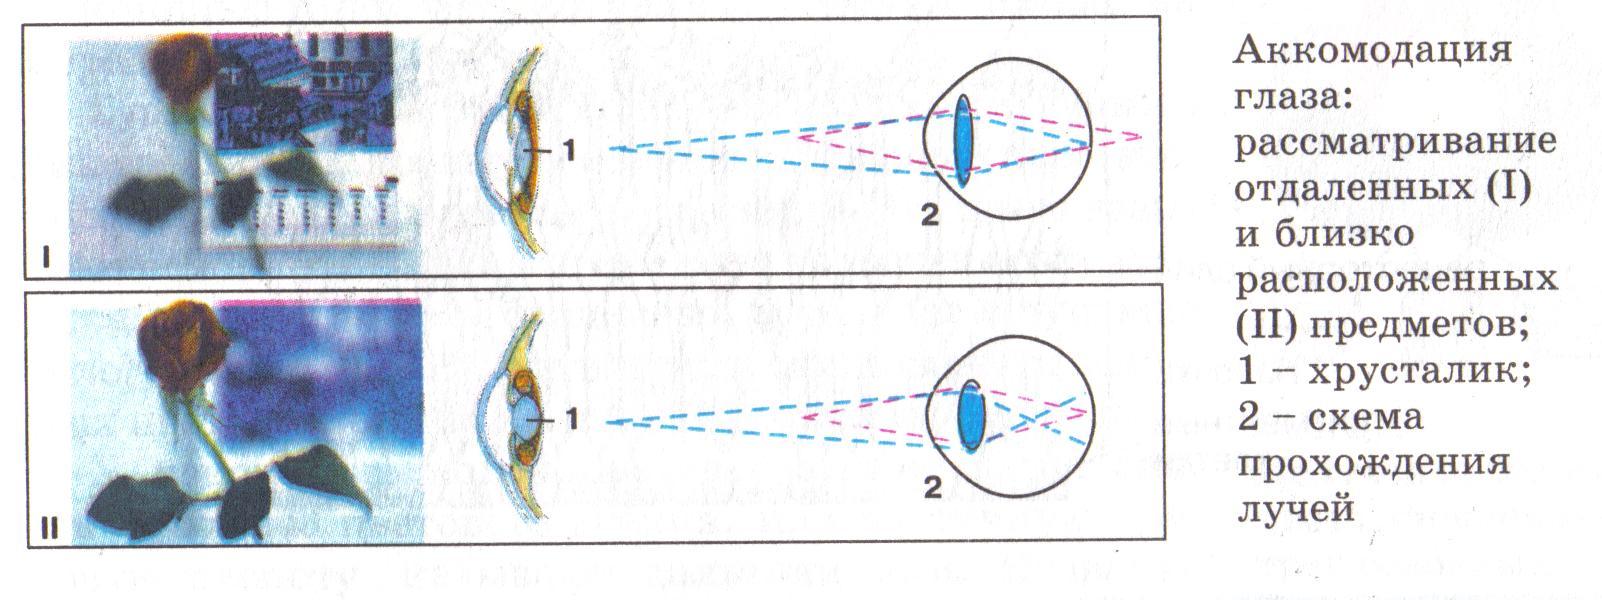 Принцип работы хрусталика практическая работа 8. Схема преломления лучей света хрусталиком глаза. Схема преломления лучей хрусталиком глаза при близорукости. Схема аккомодации хрусталика. Нарисуйте схему преломления лучей хрусталиком глаза.